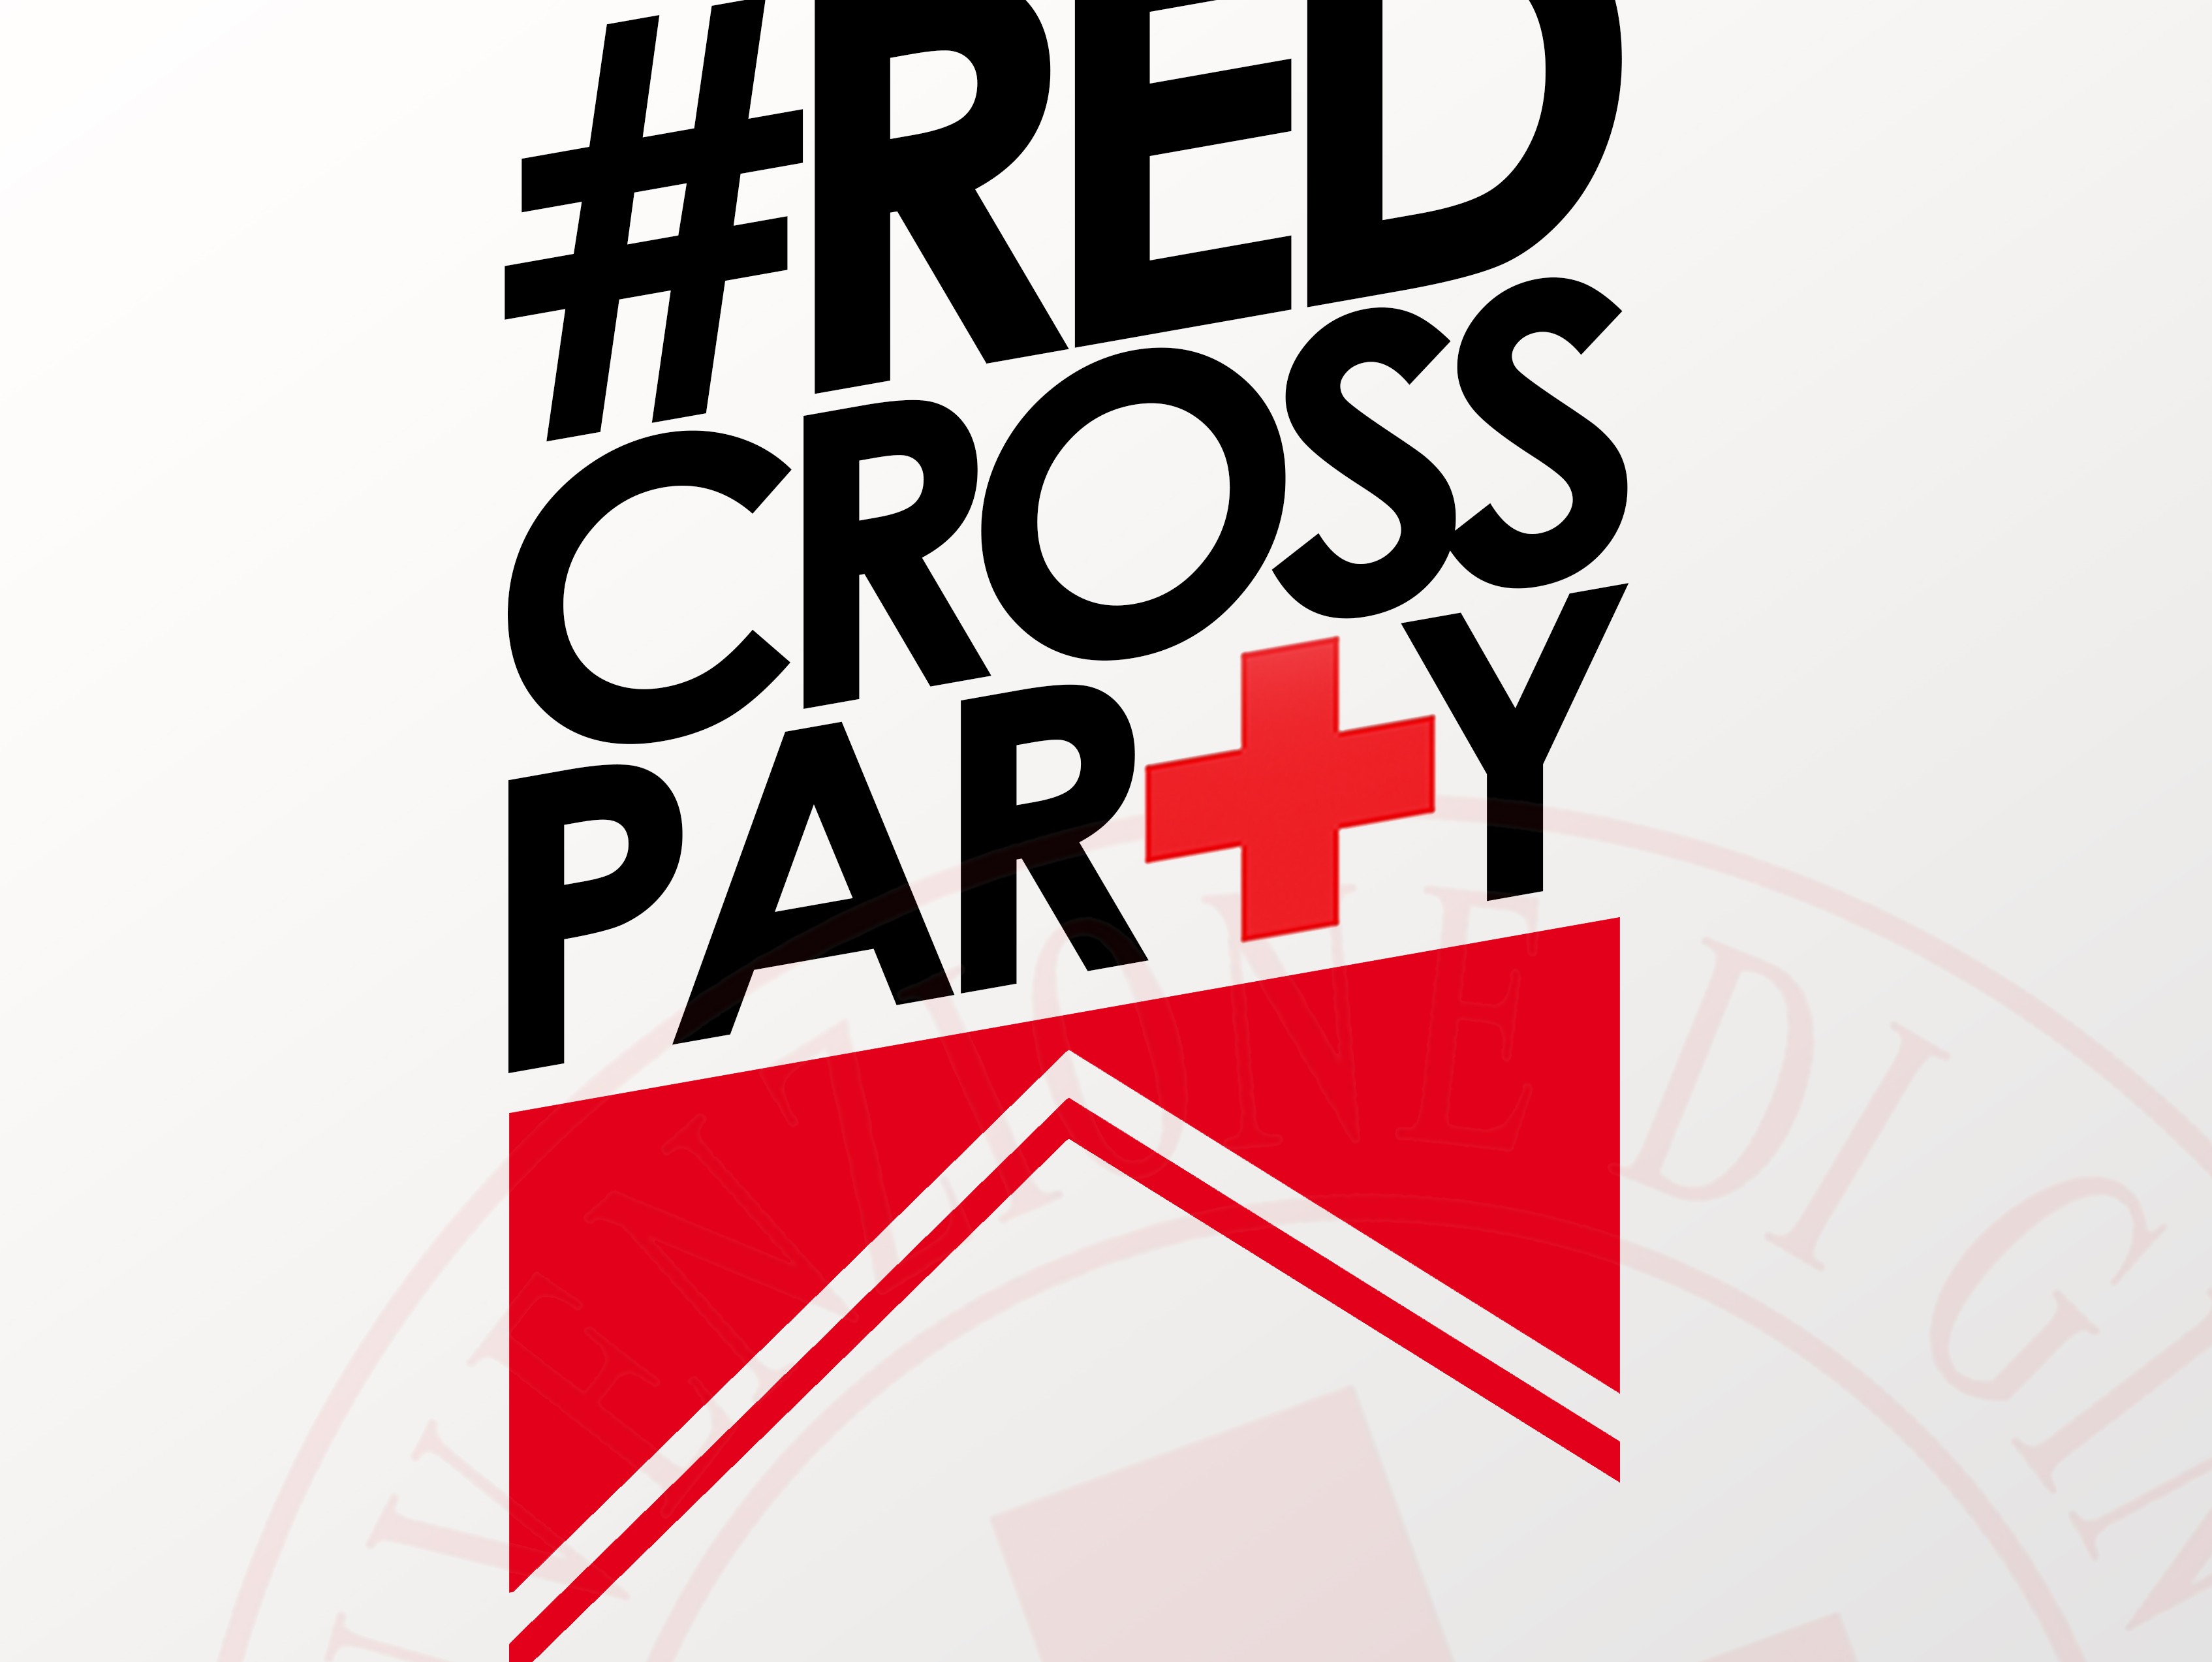 Immagine articolo: "Red Cross Party" sabato 11 Giugno alle Esperidi. Evento organizzato dalla Croce Rossa